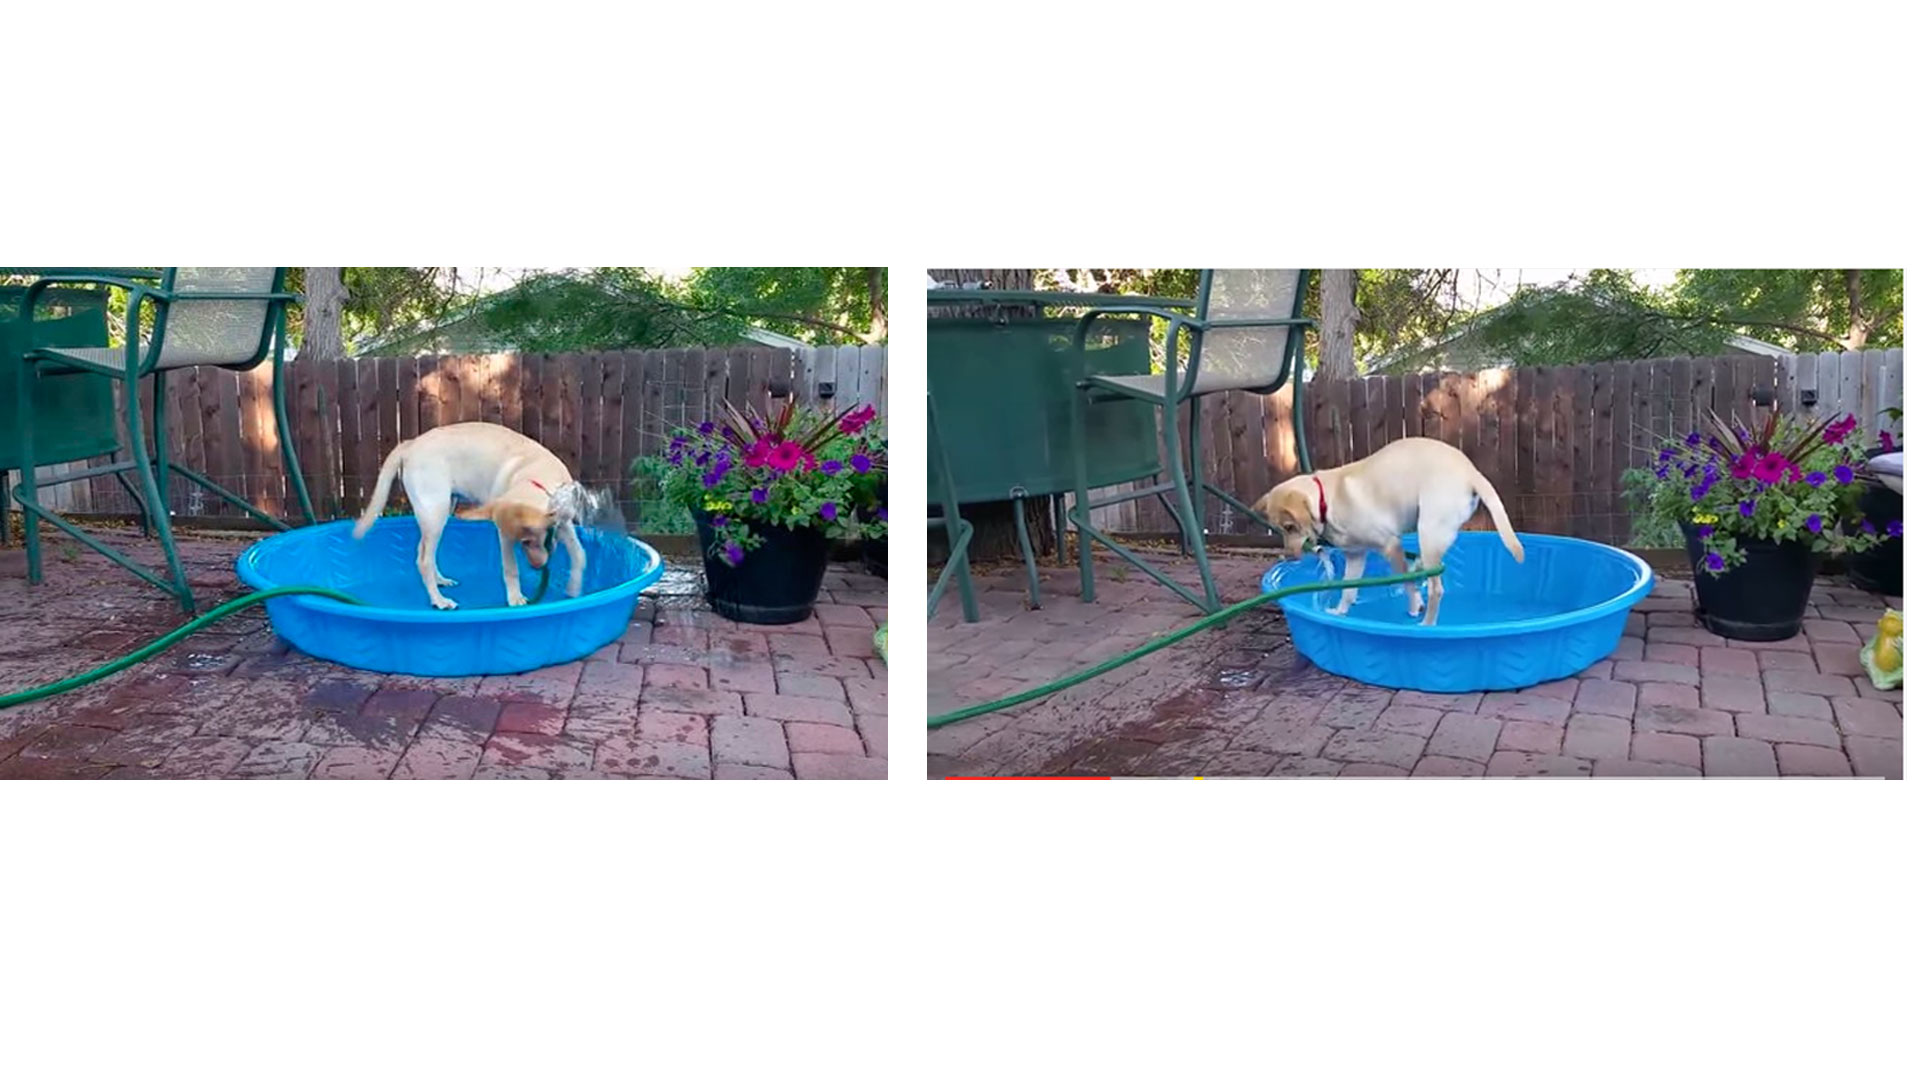 Maddie, una cachorra de seis meses, decidió darse un baño en una piscina infantil